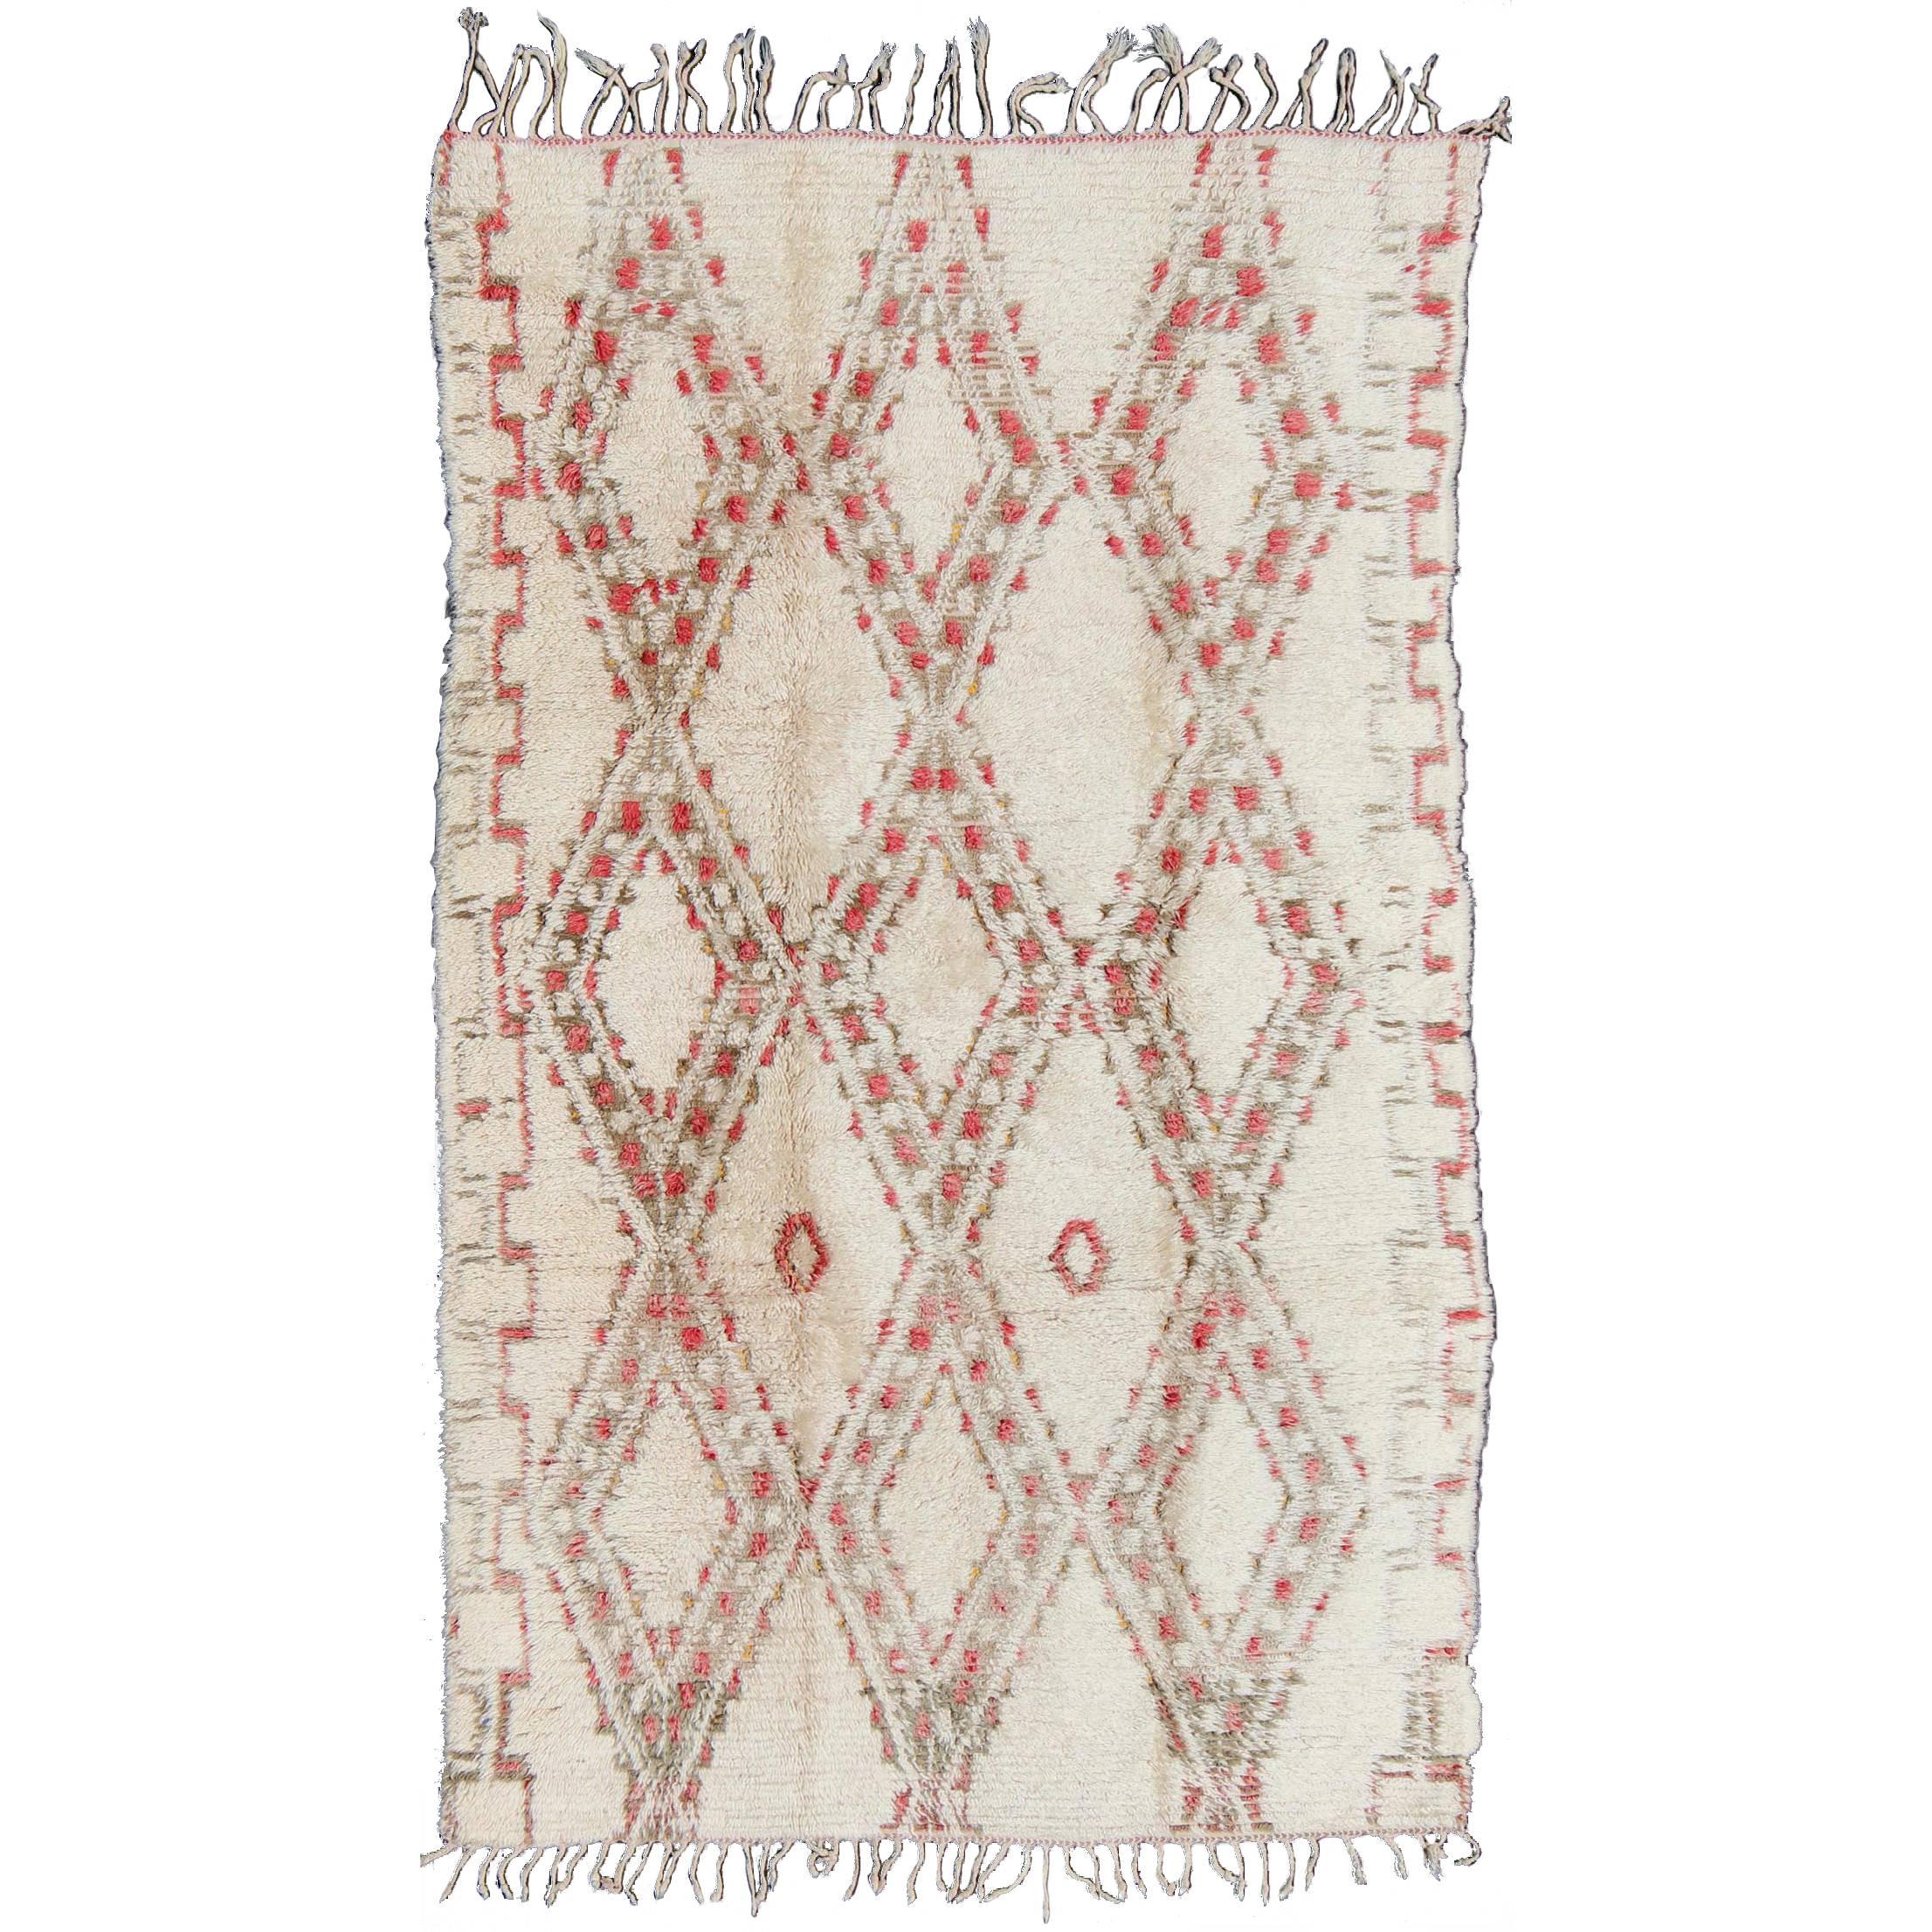 Marokkanischer Beni Ouarain-Teppich in den Farben Weiß, Elfenbein, Taupe, Grün und Rose